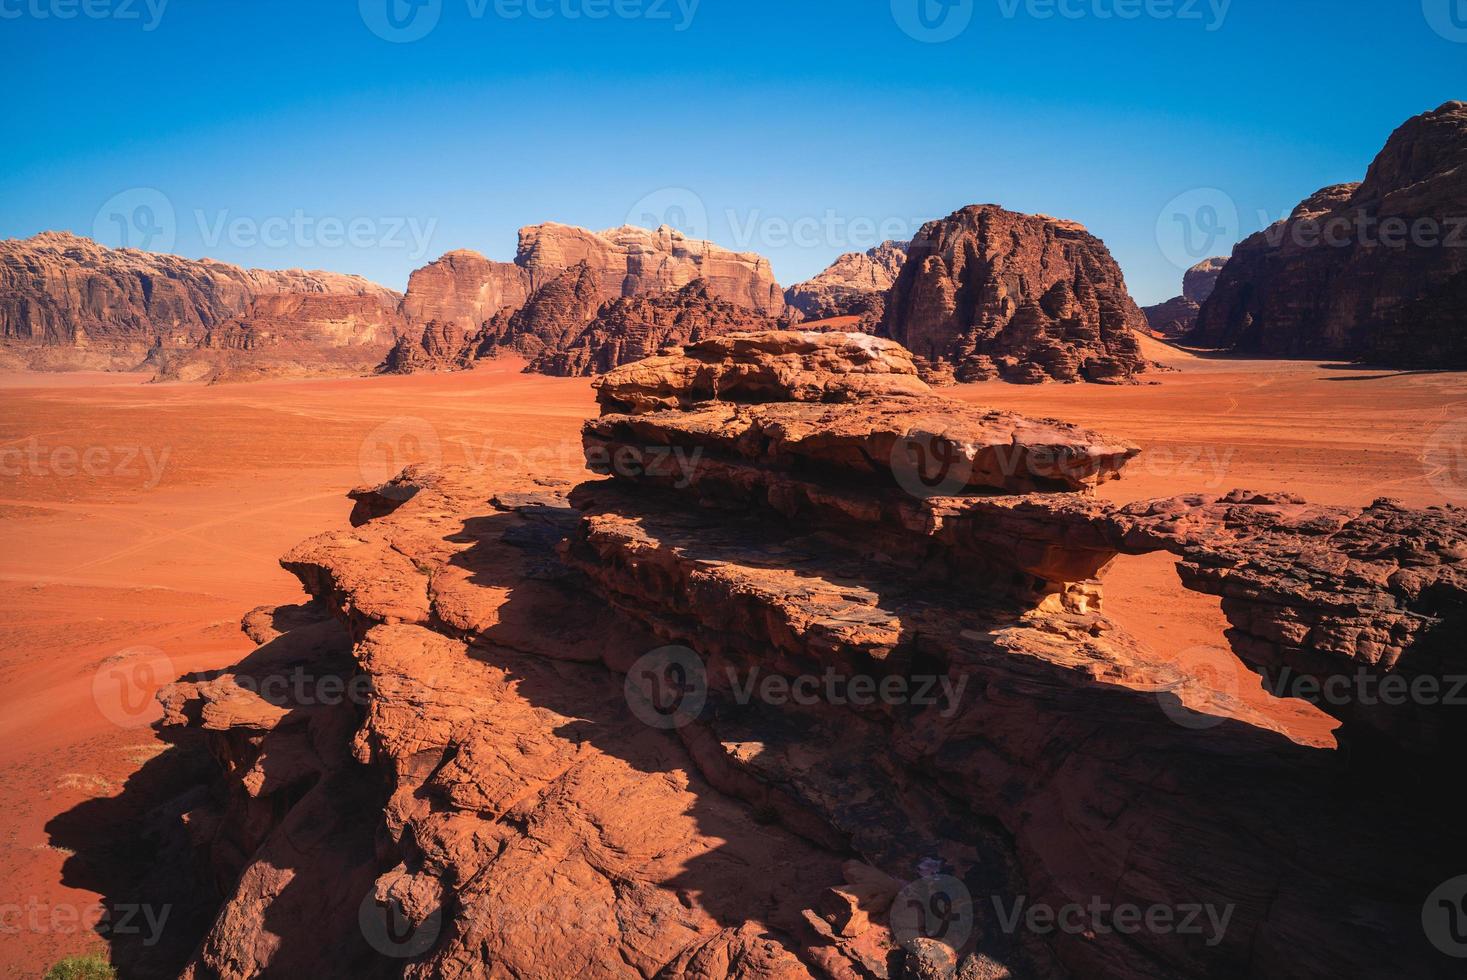 bruggetje in de wadi rumwoestijn, ook bekend als de vallei van de maan in jordan foto